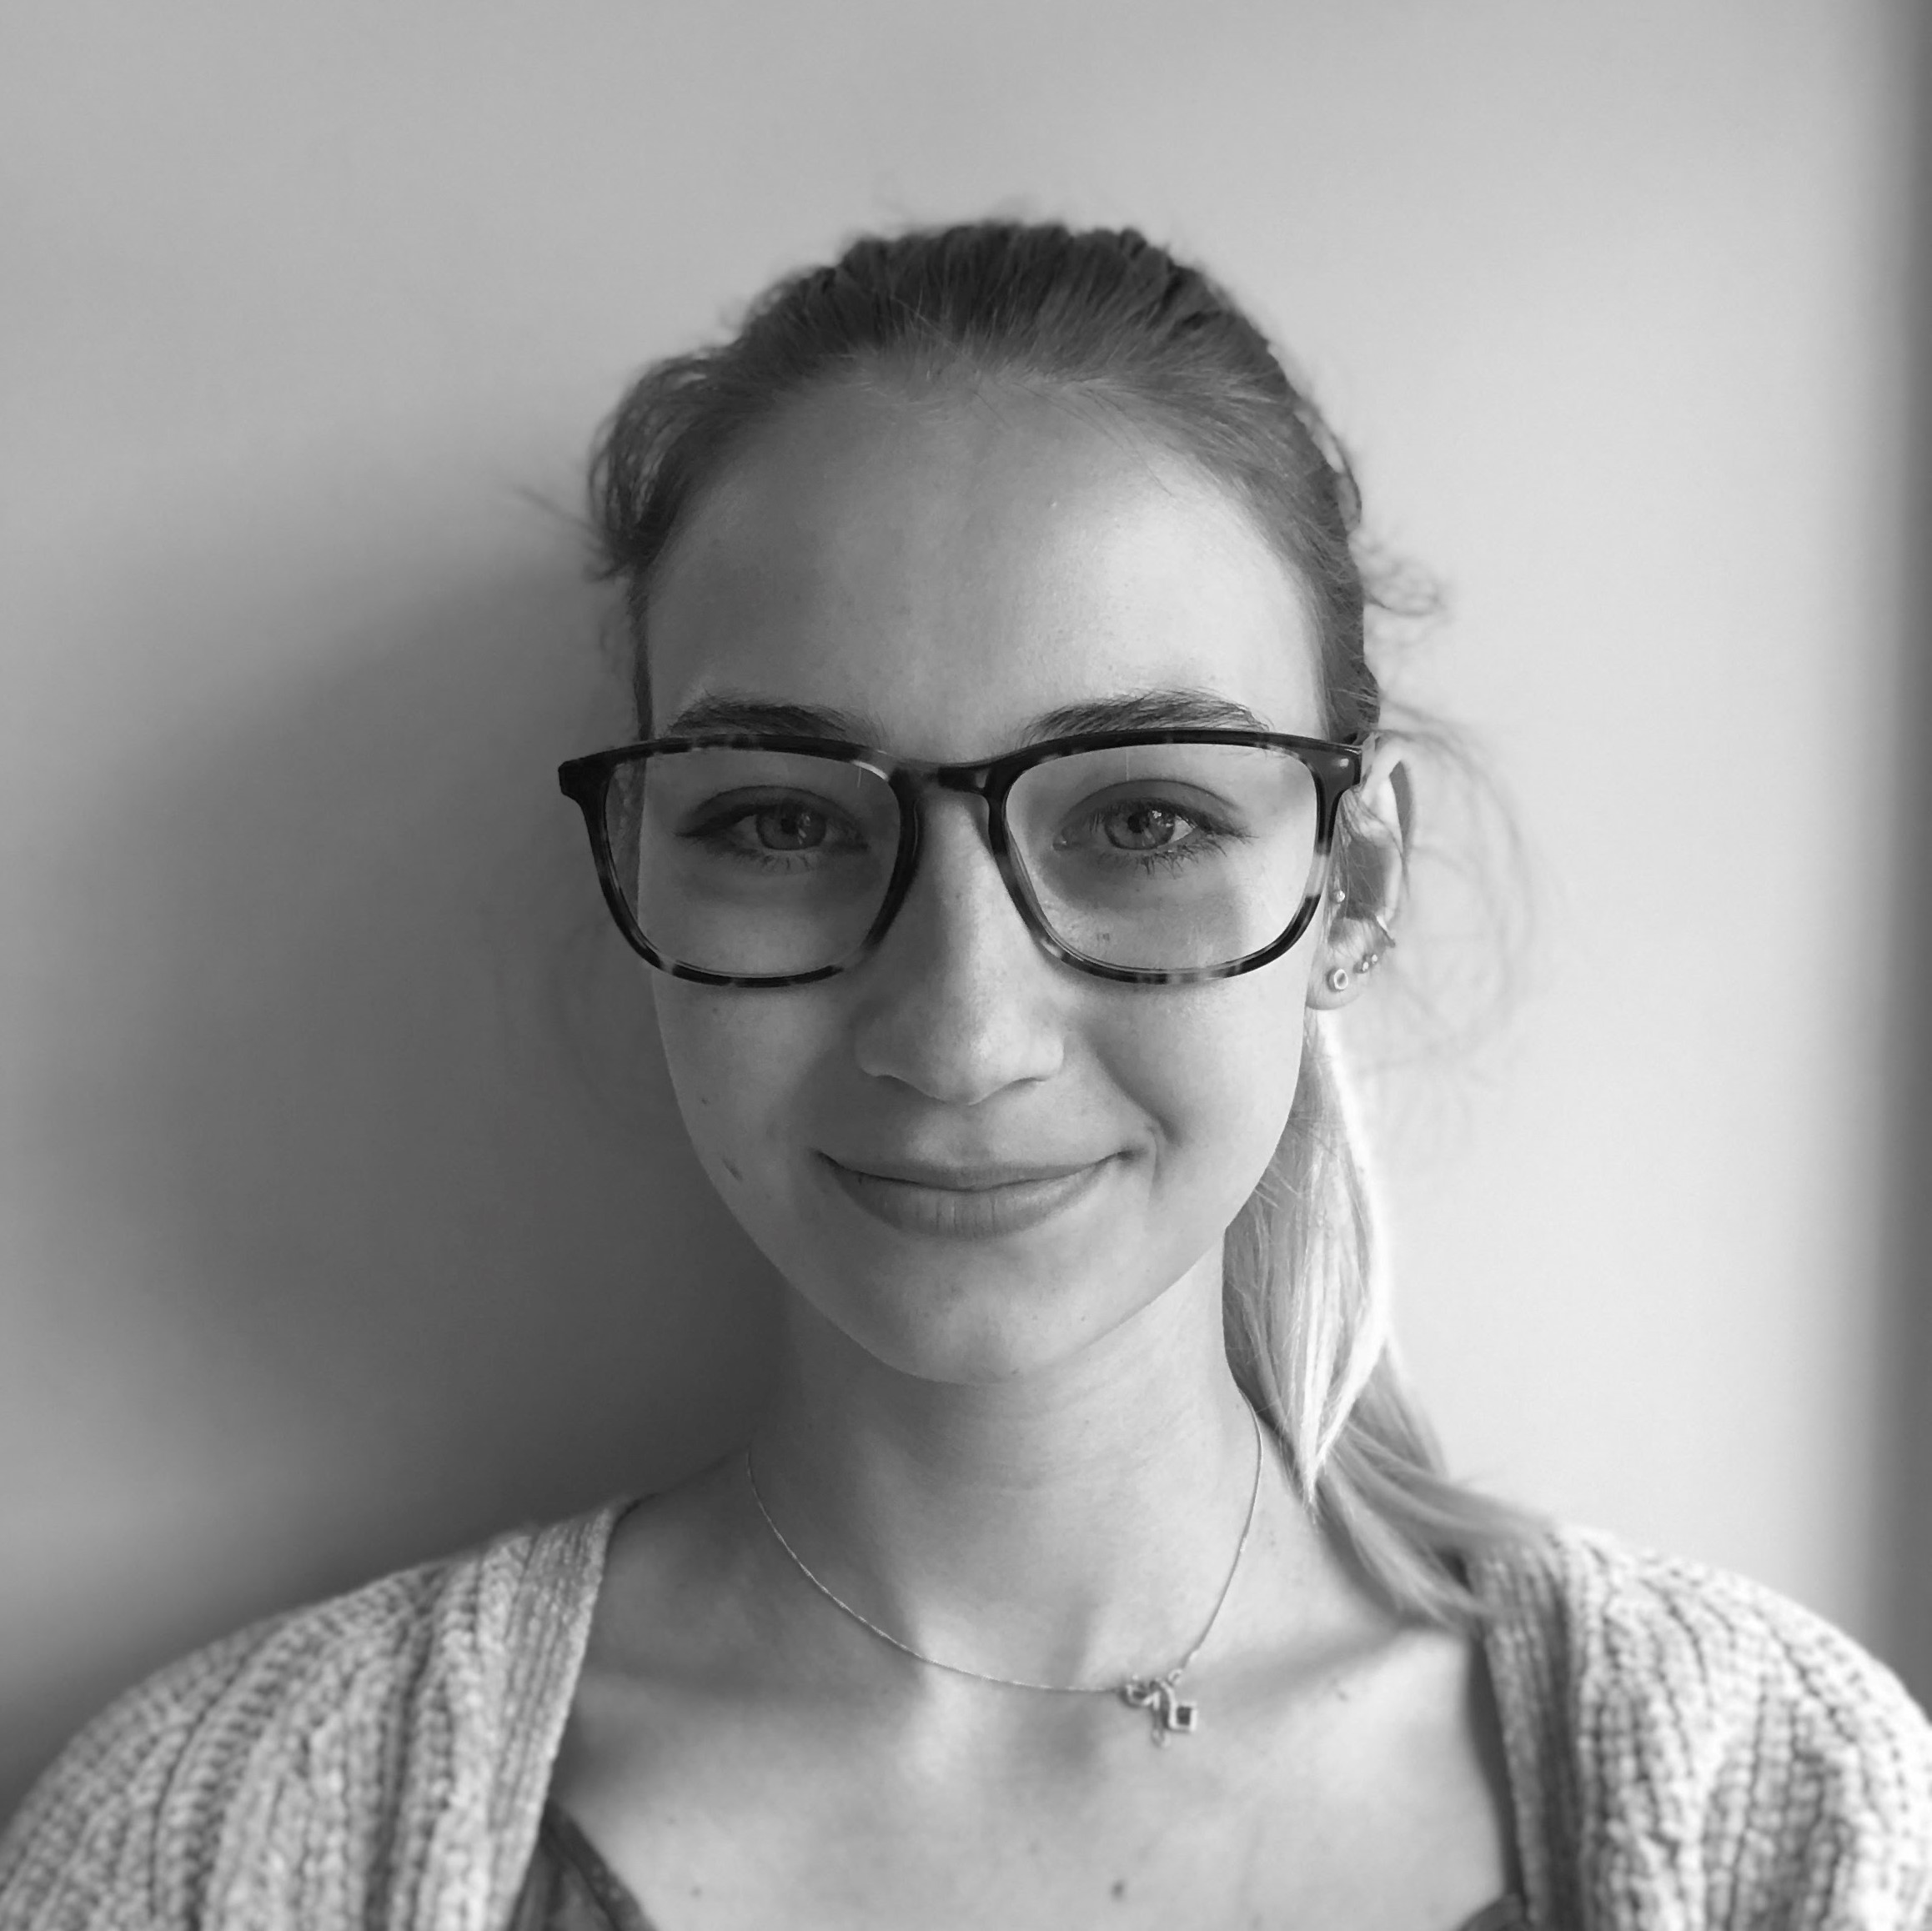 Noemi Roestel : I-CUREUS Undergraduate Research Assistant